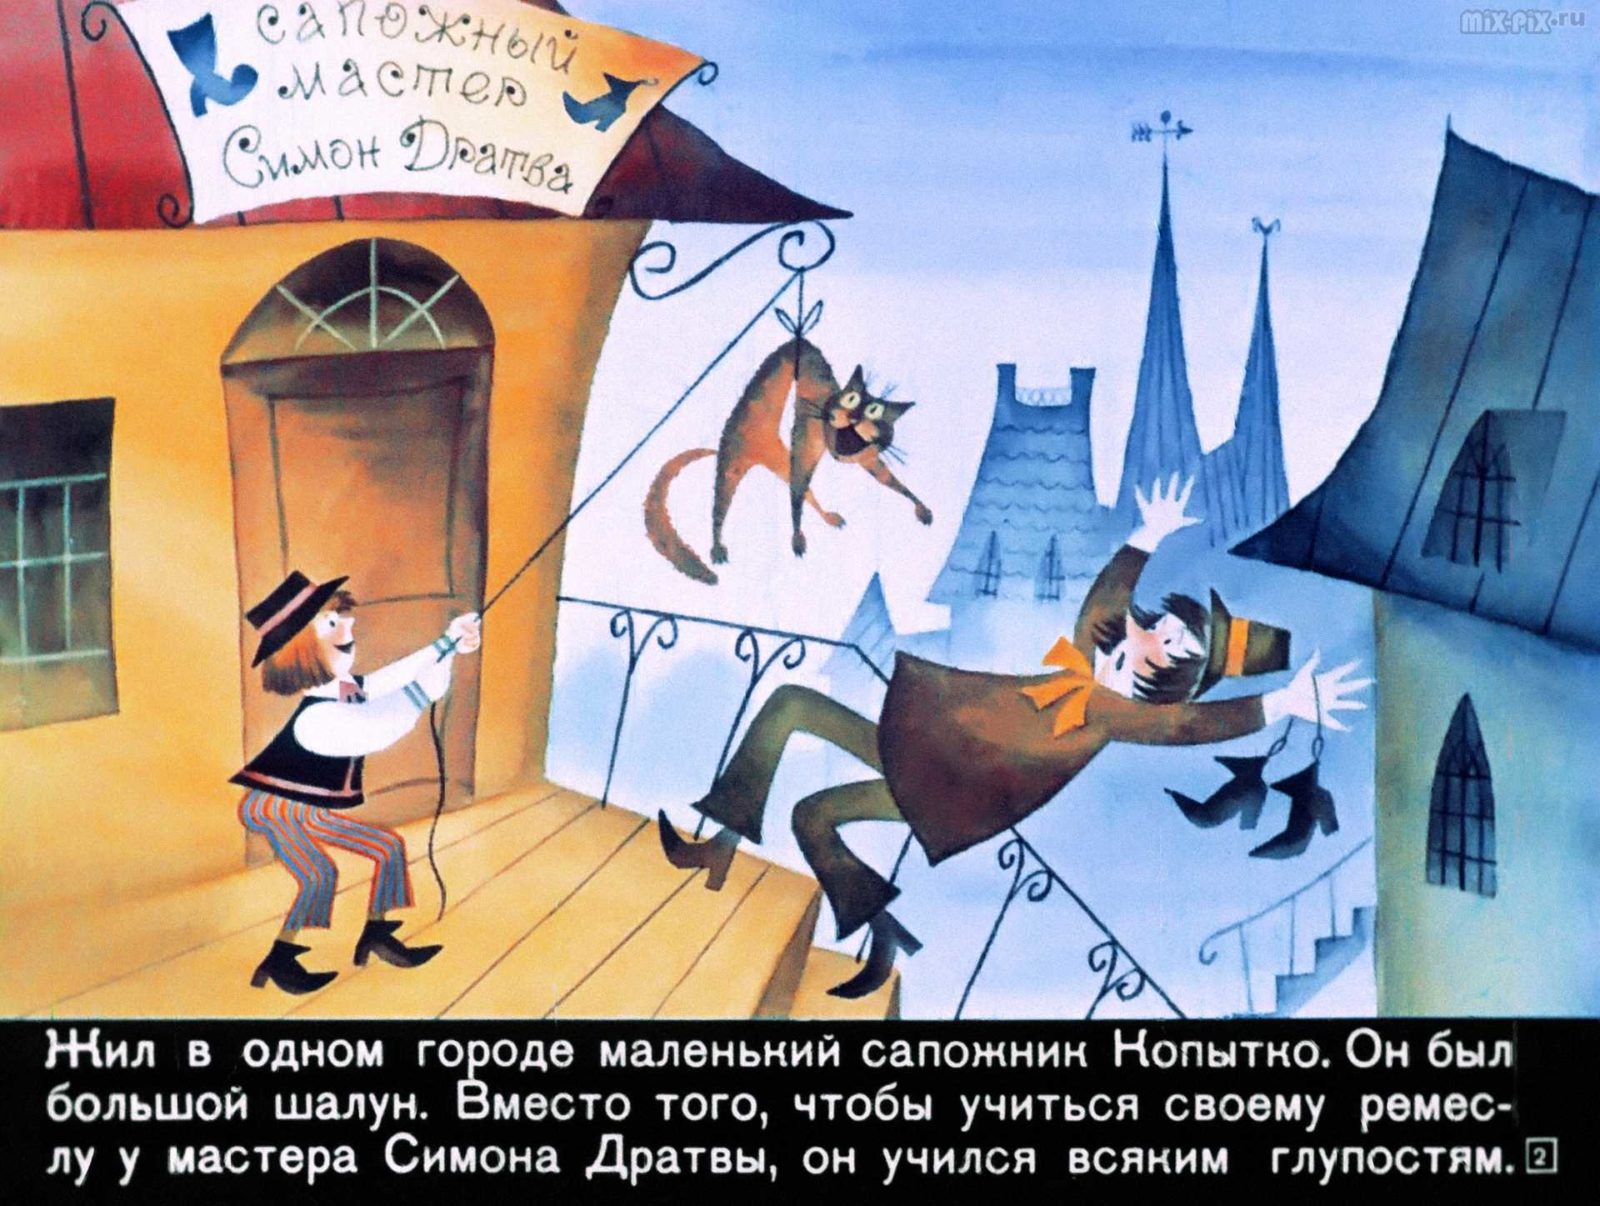 Сапожник Копытко и утка Кря (1972) 25